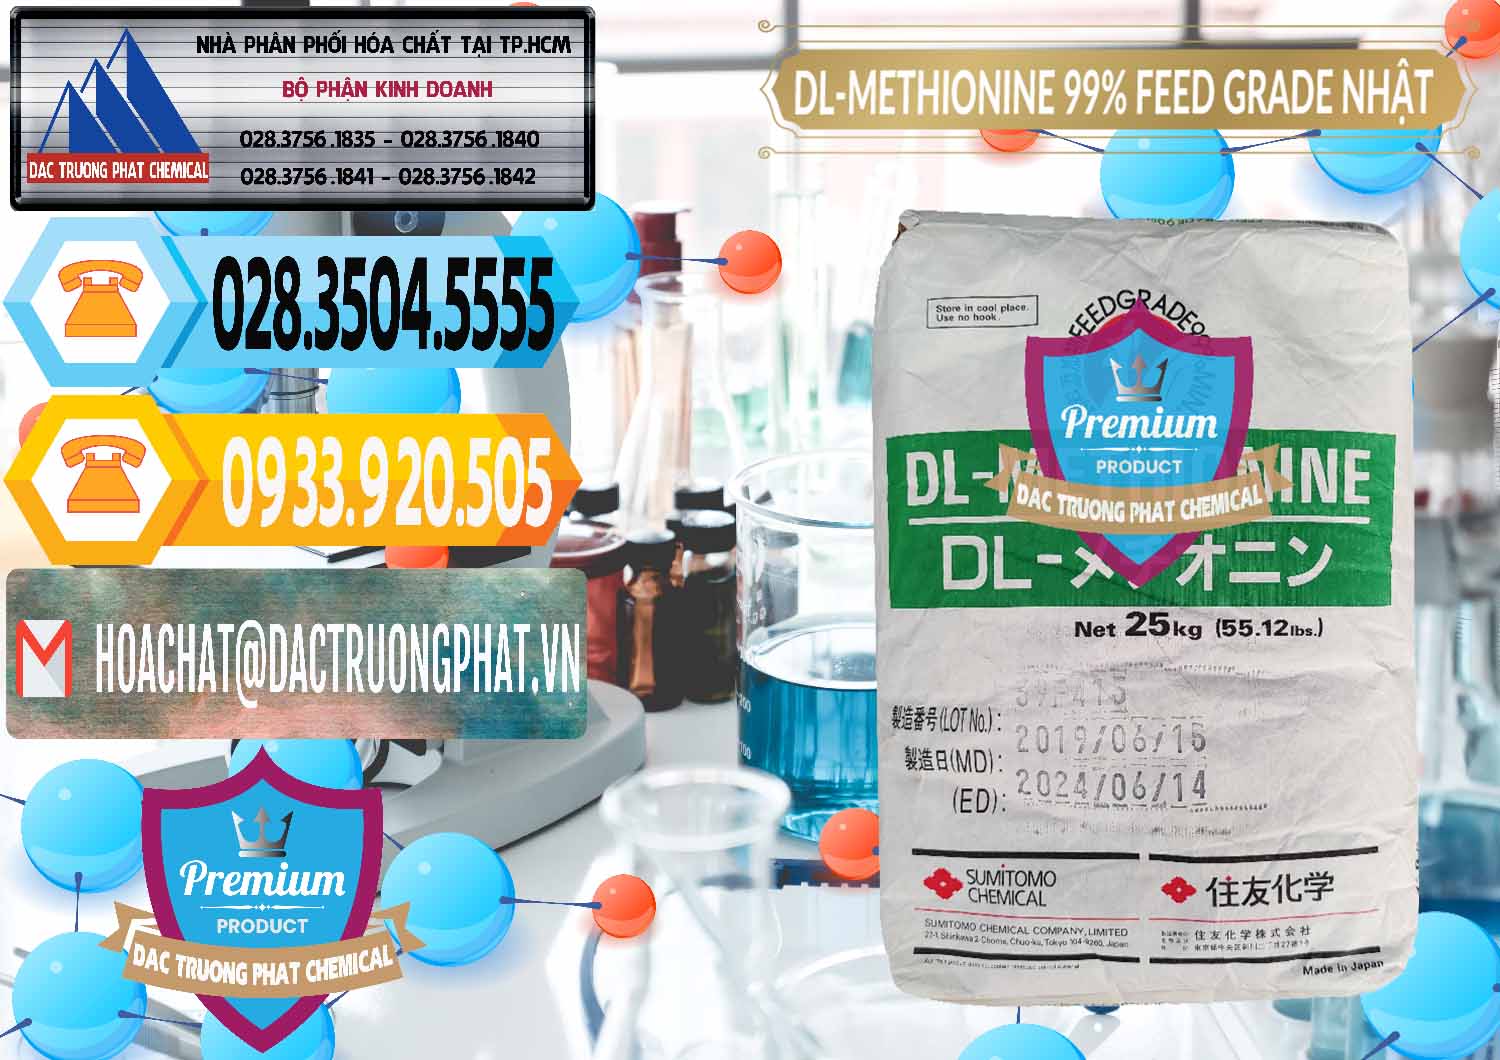 Nhà phân phối - bán DL-Methionine - C5H11NO2S Feed Grade Sumitomo Nhật Bản Japan - 0313 - Chuyên bán - phân phối hóa chất tại TP.HCM - hoachattayrua.net